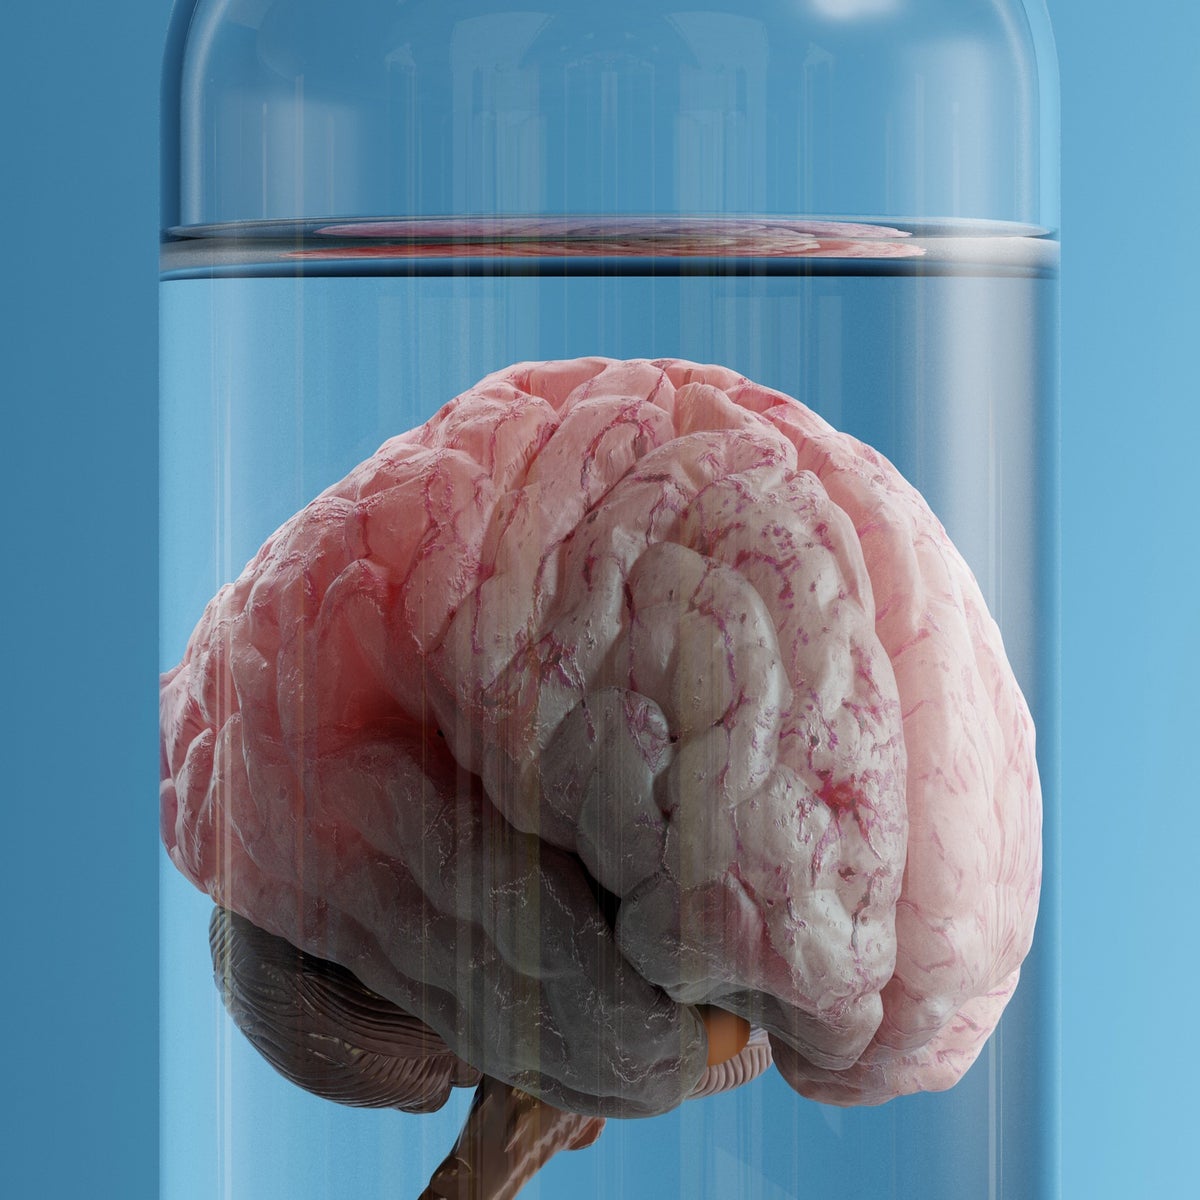 Human brain specimen. The human brain specimen that underwent ex vivo